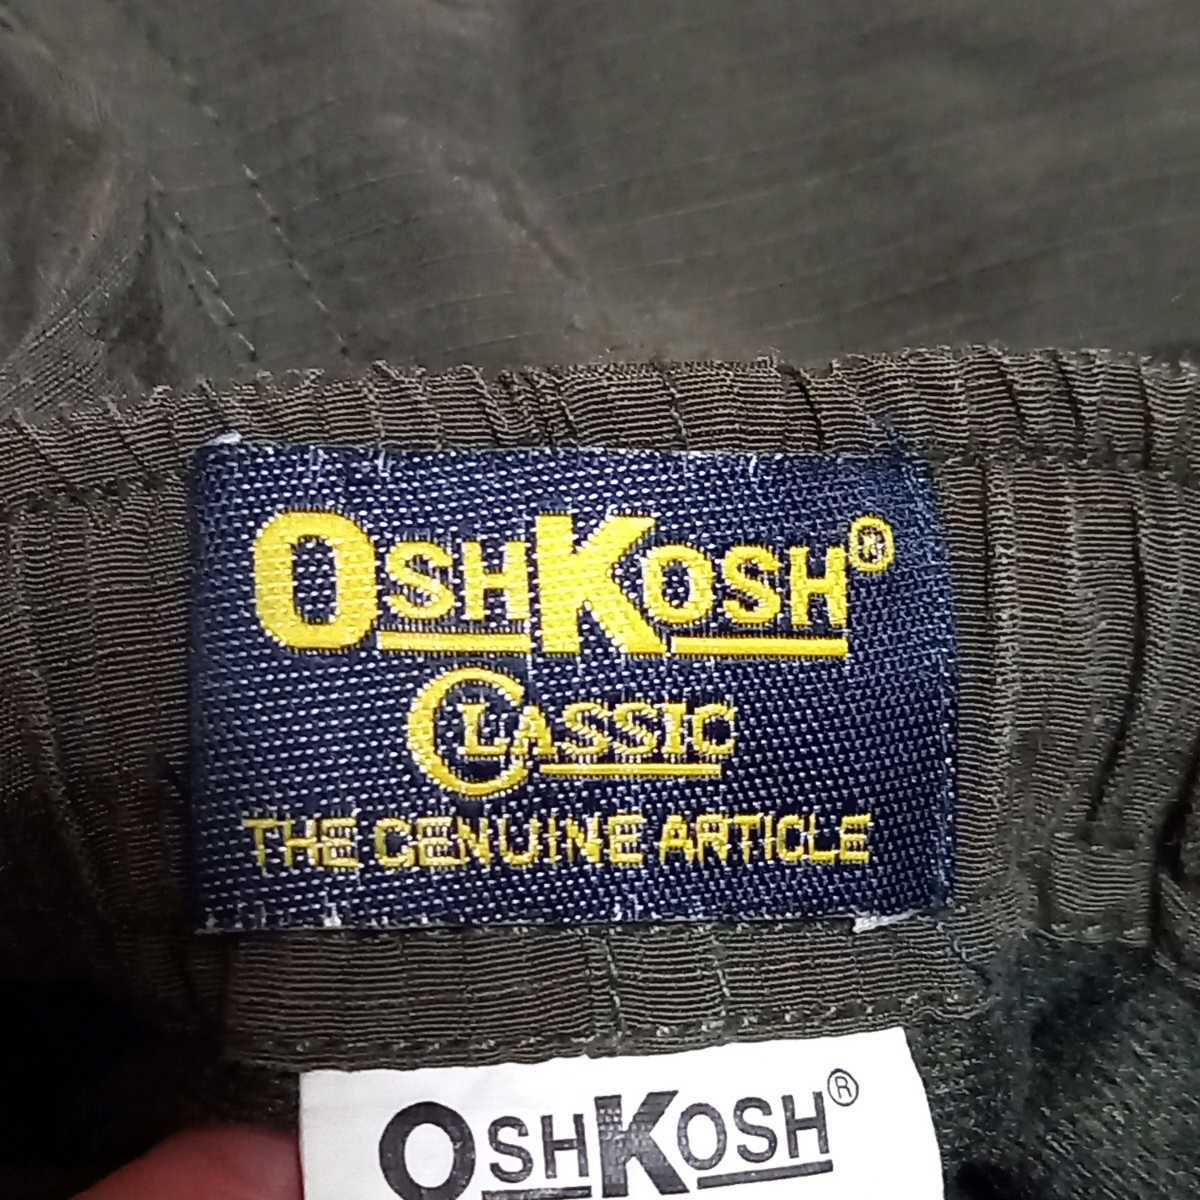 日本製【OSHKOSH CLASSIC】オシュコシュ クラシック ワーク ミリタリー パンツ カーキ系 綿 ナイロン アウトドア フリース メンズ  M/807tt